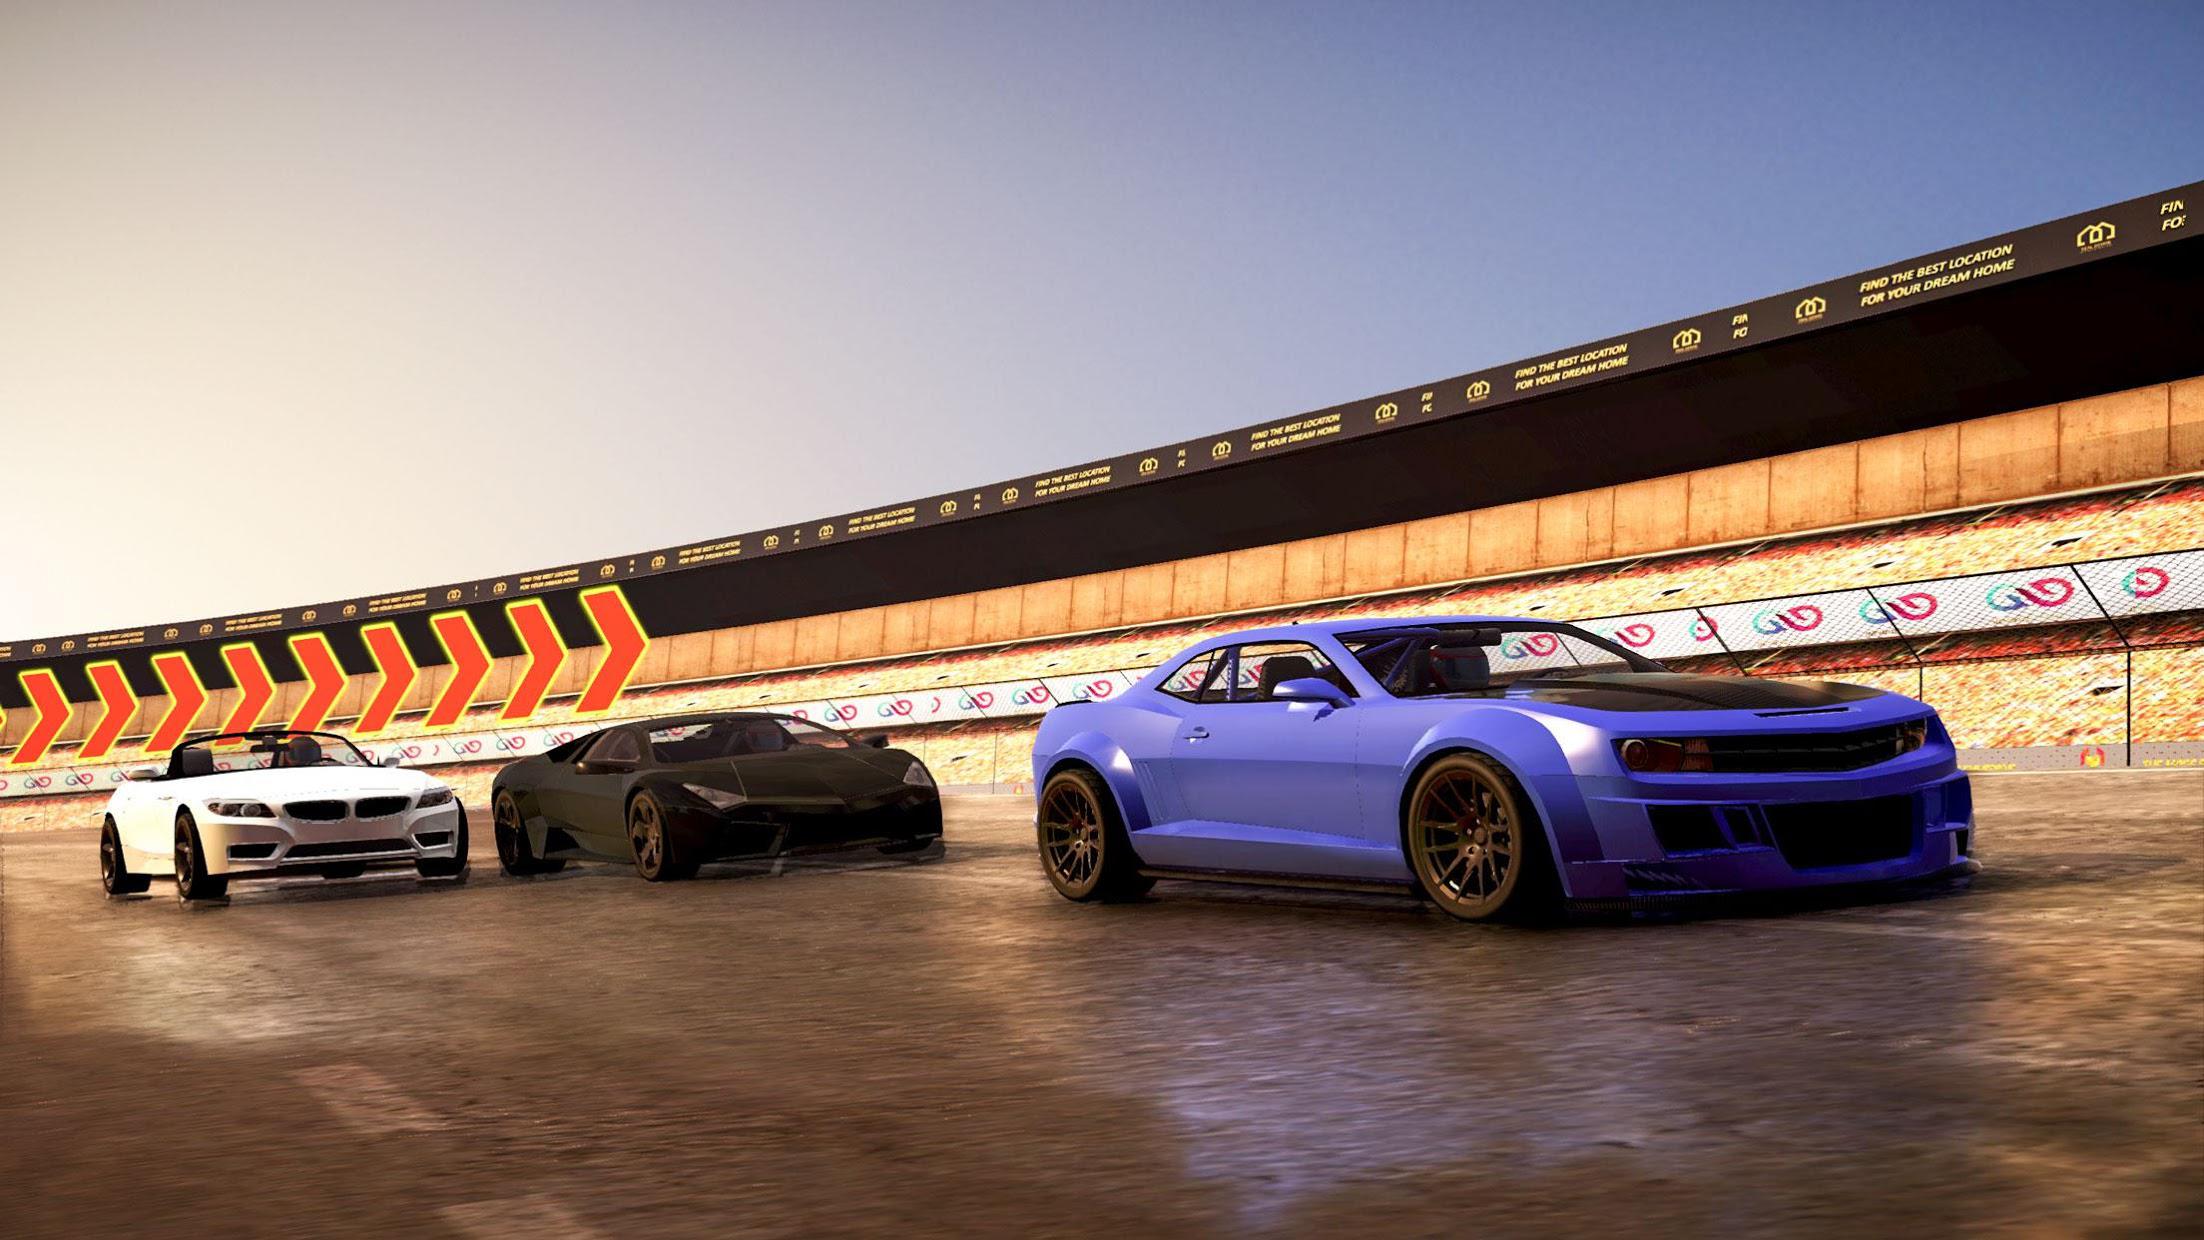 King of Race: 3D Car Racing